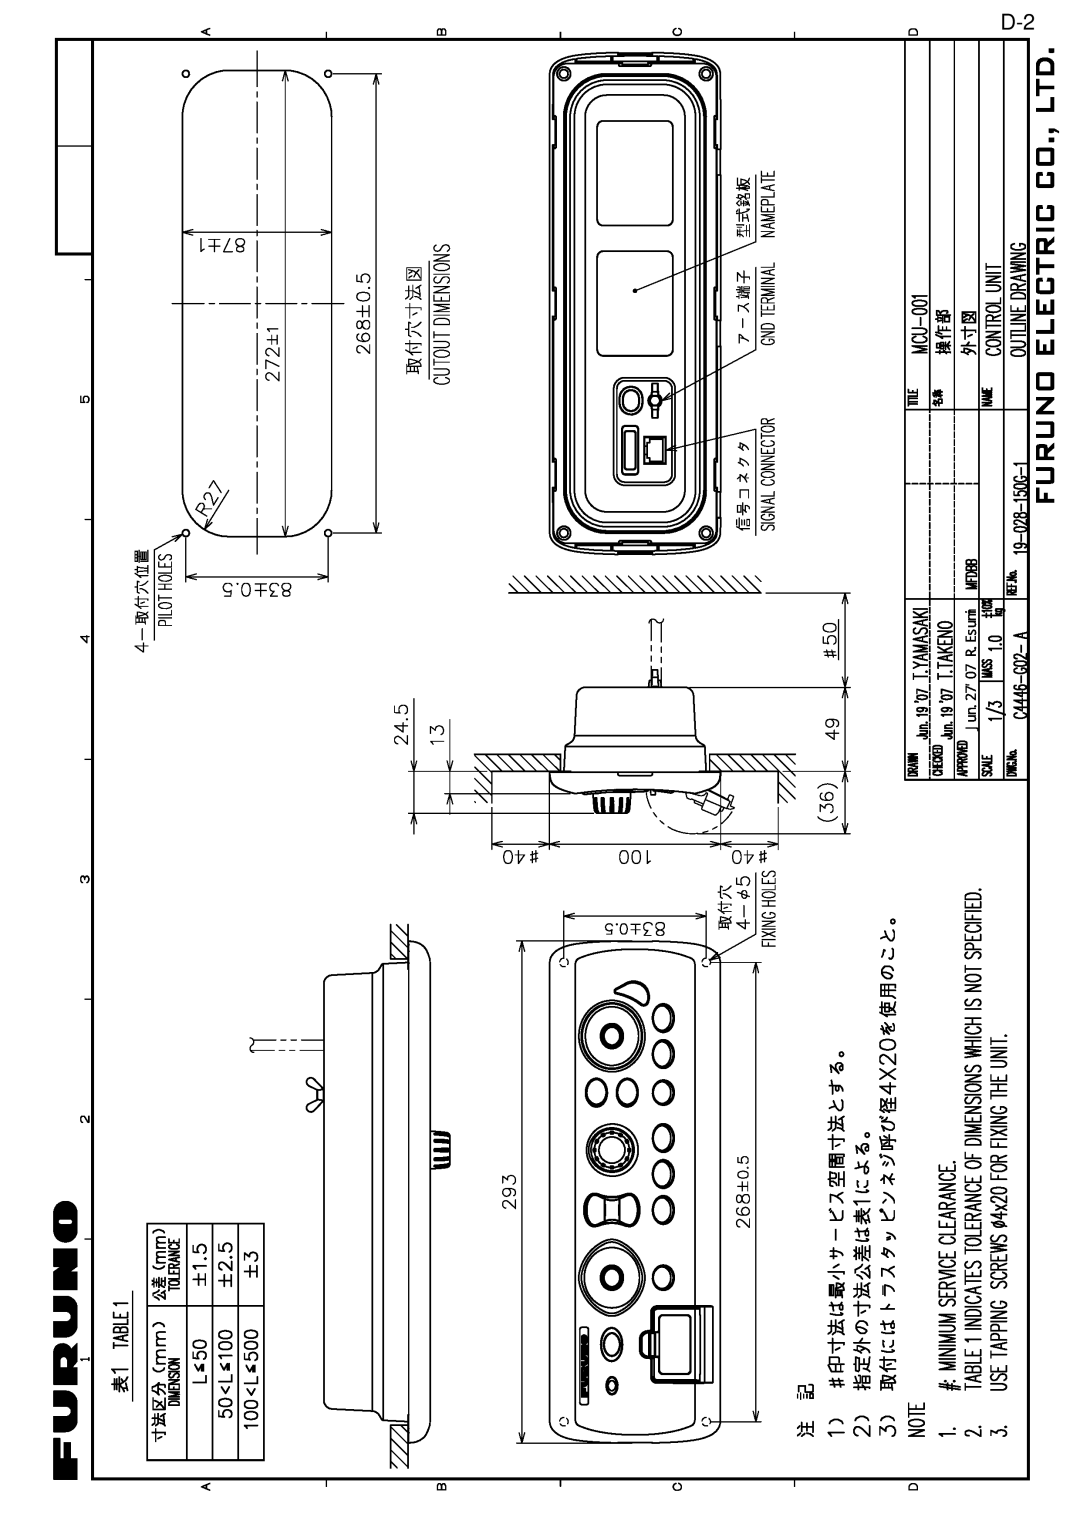 Furuno MFD8/12/BB manual Jun.2707 R.Esumi 